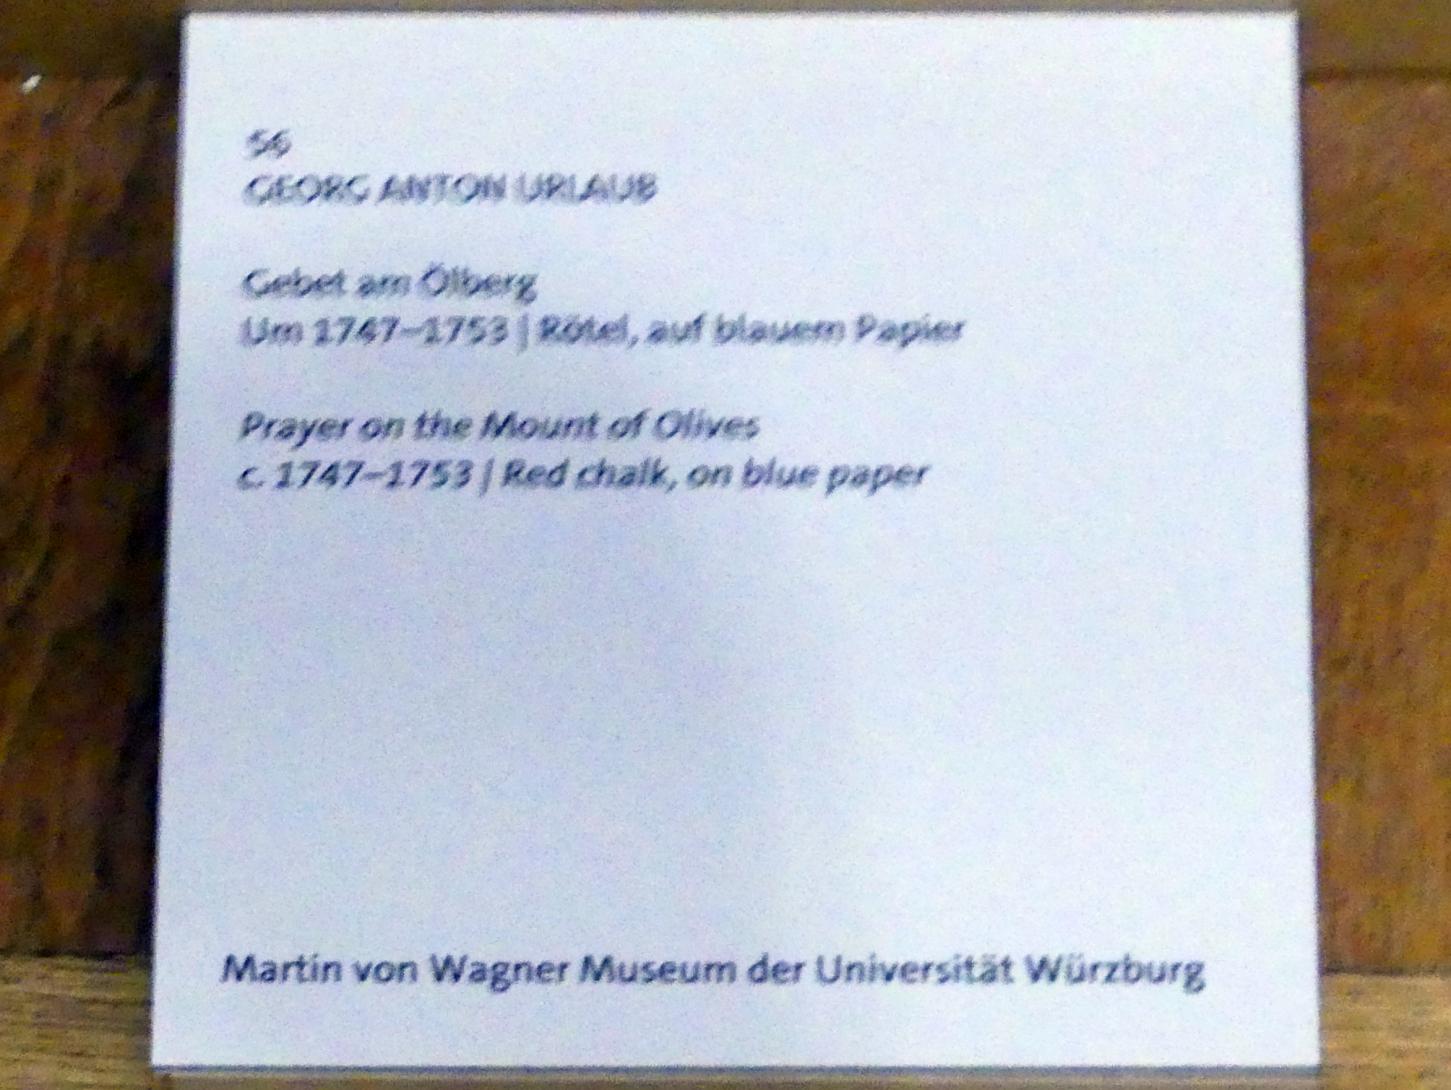 Georg Anton Urlaub (1735–1758), Gebet am Ölberg, Würzburg, Martin von Wagner Museum, Ausstellung "Tiepolo und seine Zeit in Würzburg" vom 31.10.2020-15.07.2021, Saal 2, um 1747–1753, Bild 2/2